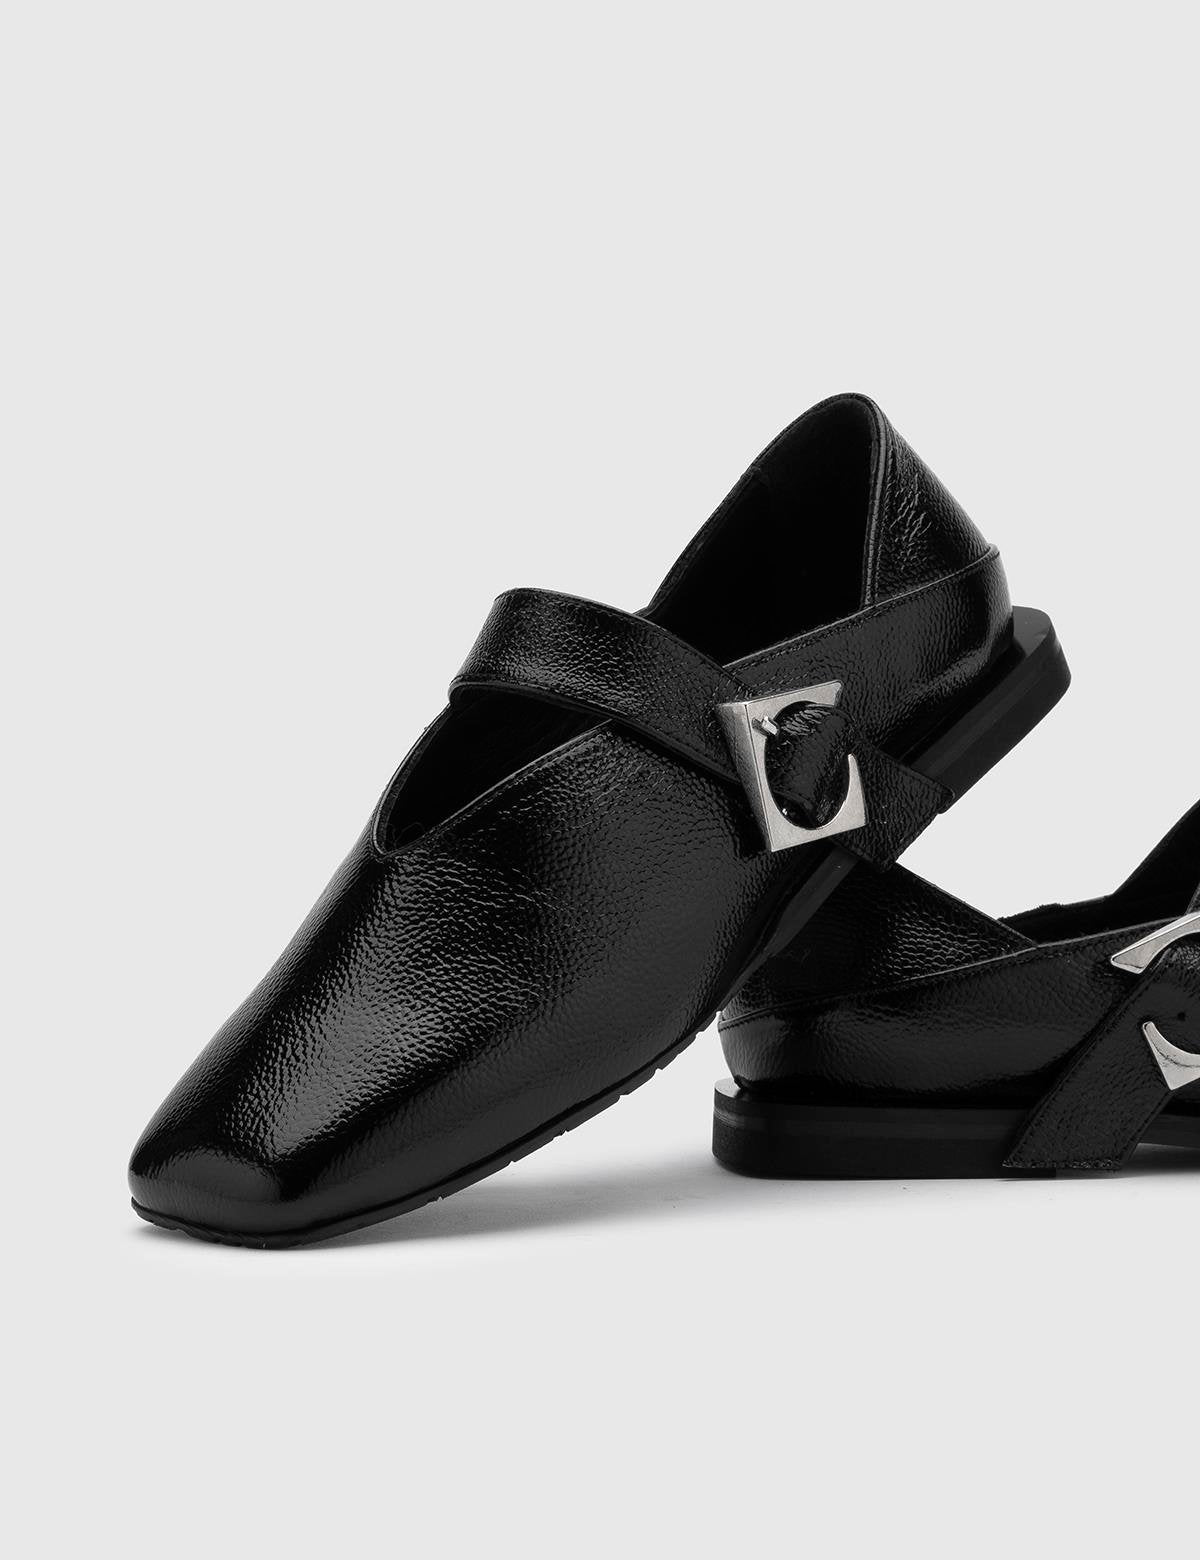 Vekda Damen-Loafer aus schwarzem Lackleder